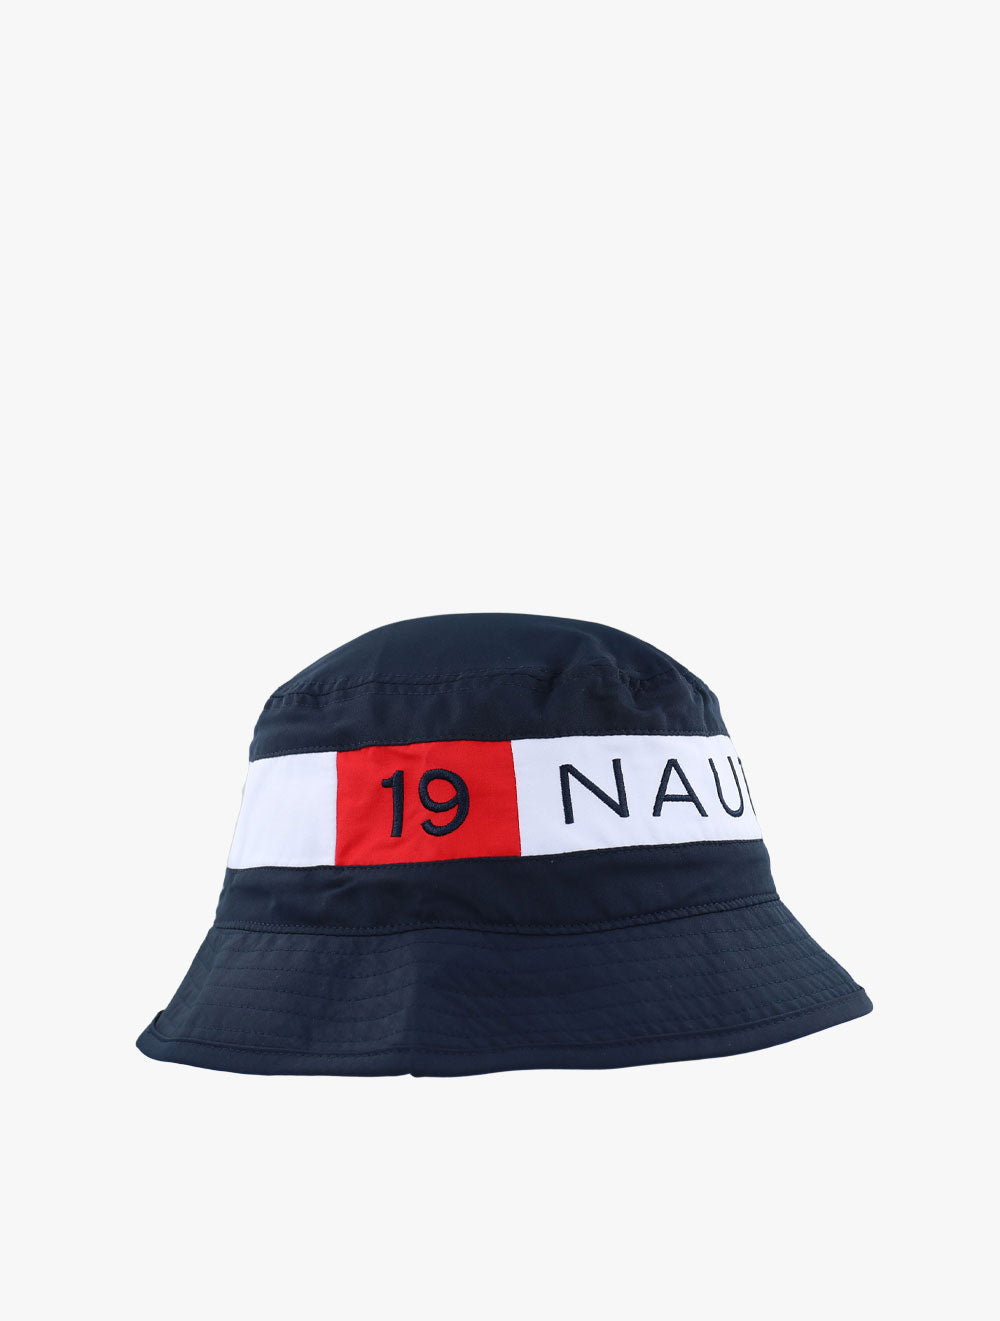 NAUTICA
Poseidon Bucket Hat - NAUH37415459